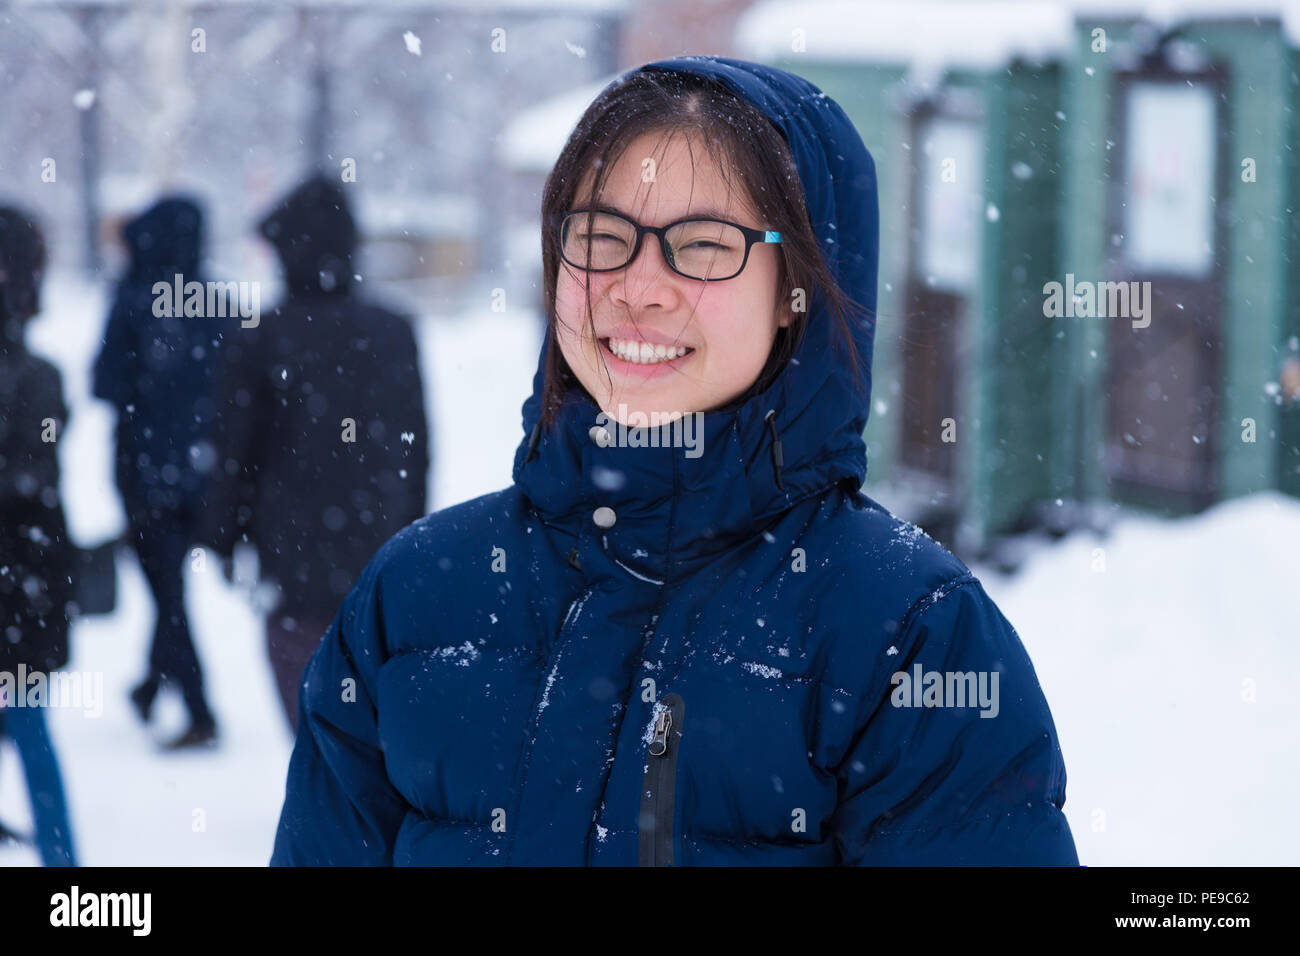 Happy Young Asian female adolescent dans un épais manteau d'hiver bleu profitez d'être à l'extérieur pendant l'hiver la neige, bon pour en toute sécurité avec une assurance vie ou attitude positive co Banque D'Images